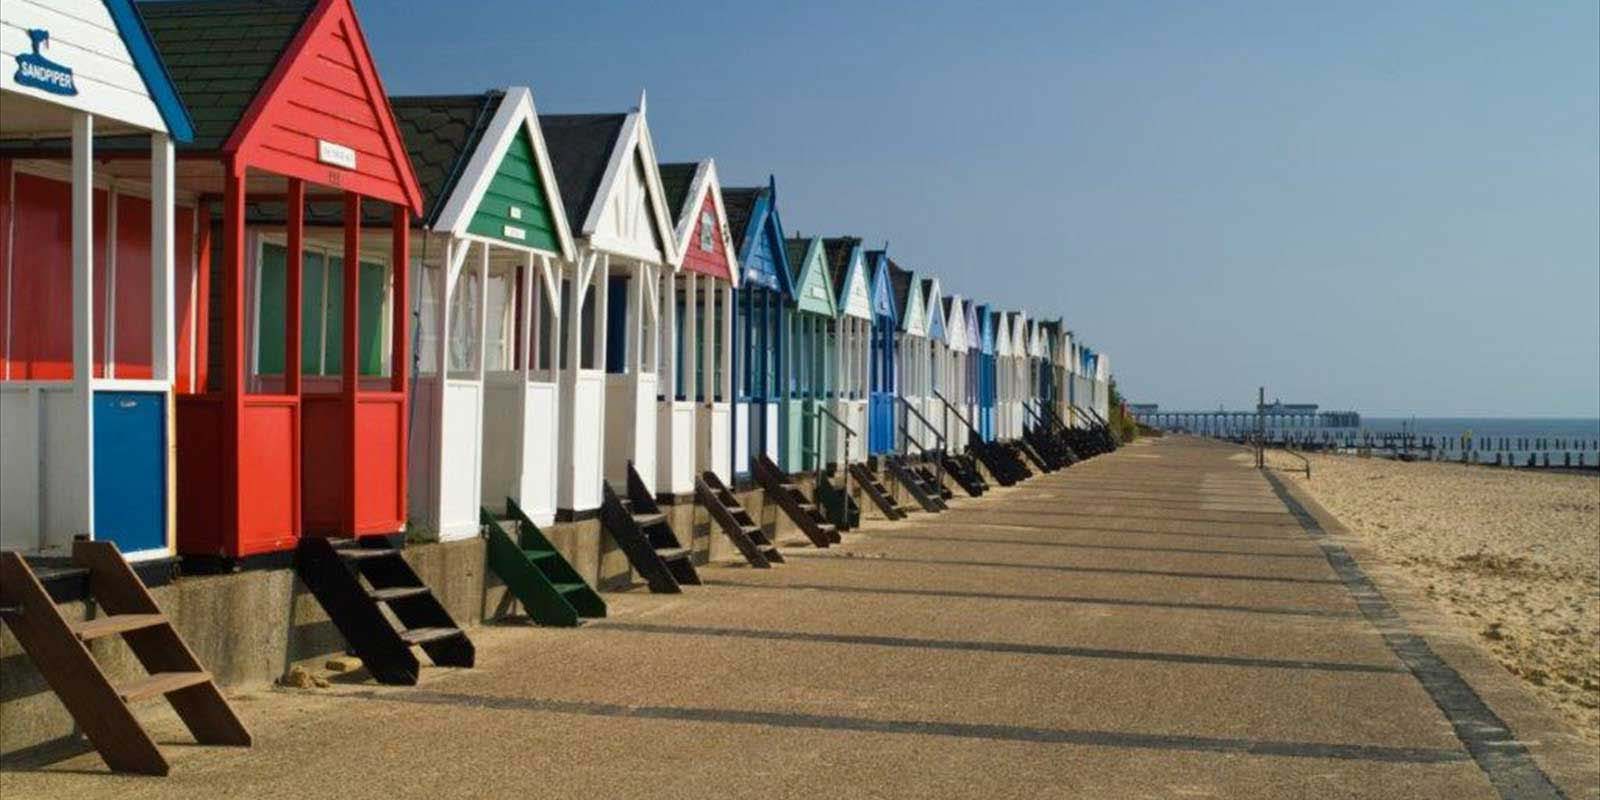 Suffolk holiday huts